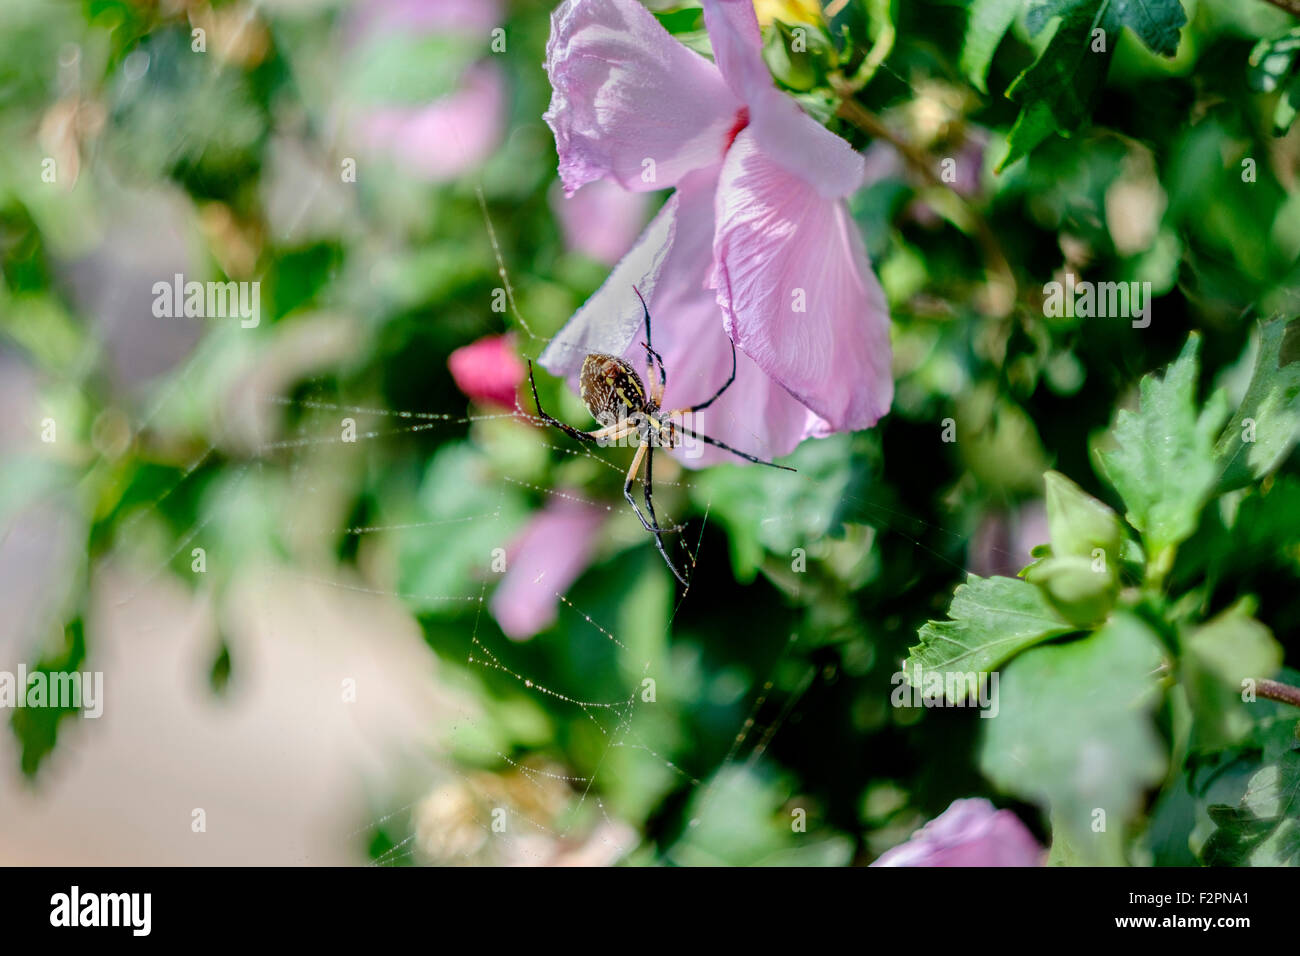 Un giardino giallo spider, o mais spider, Argiope aurantia,mostrando il suo retro mentre su una rosa di Sharon arbusto, Althea, in Oklahoma, Stati Uniti d'America. Foto Stock